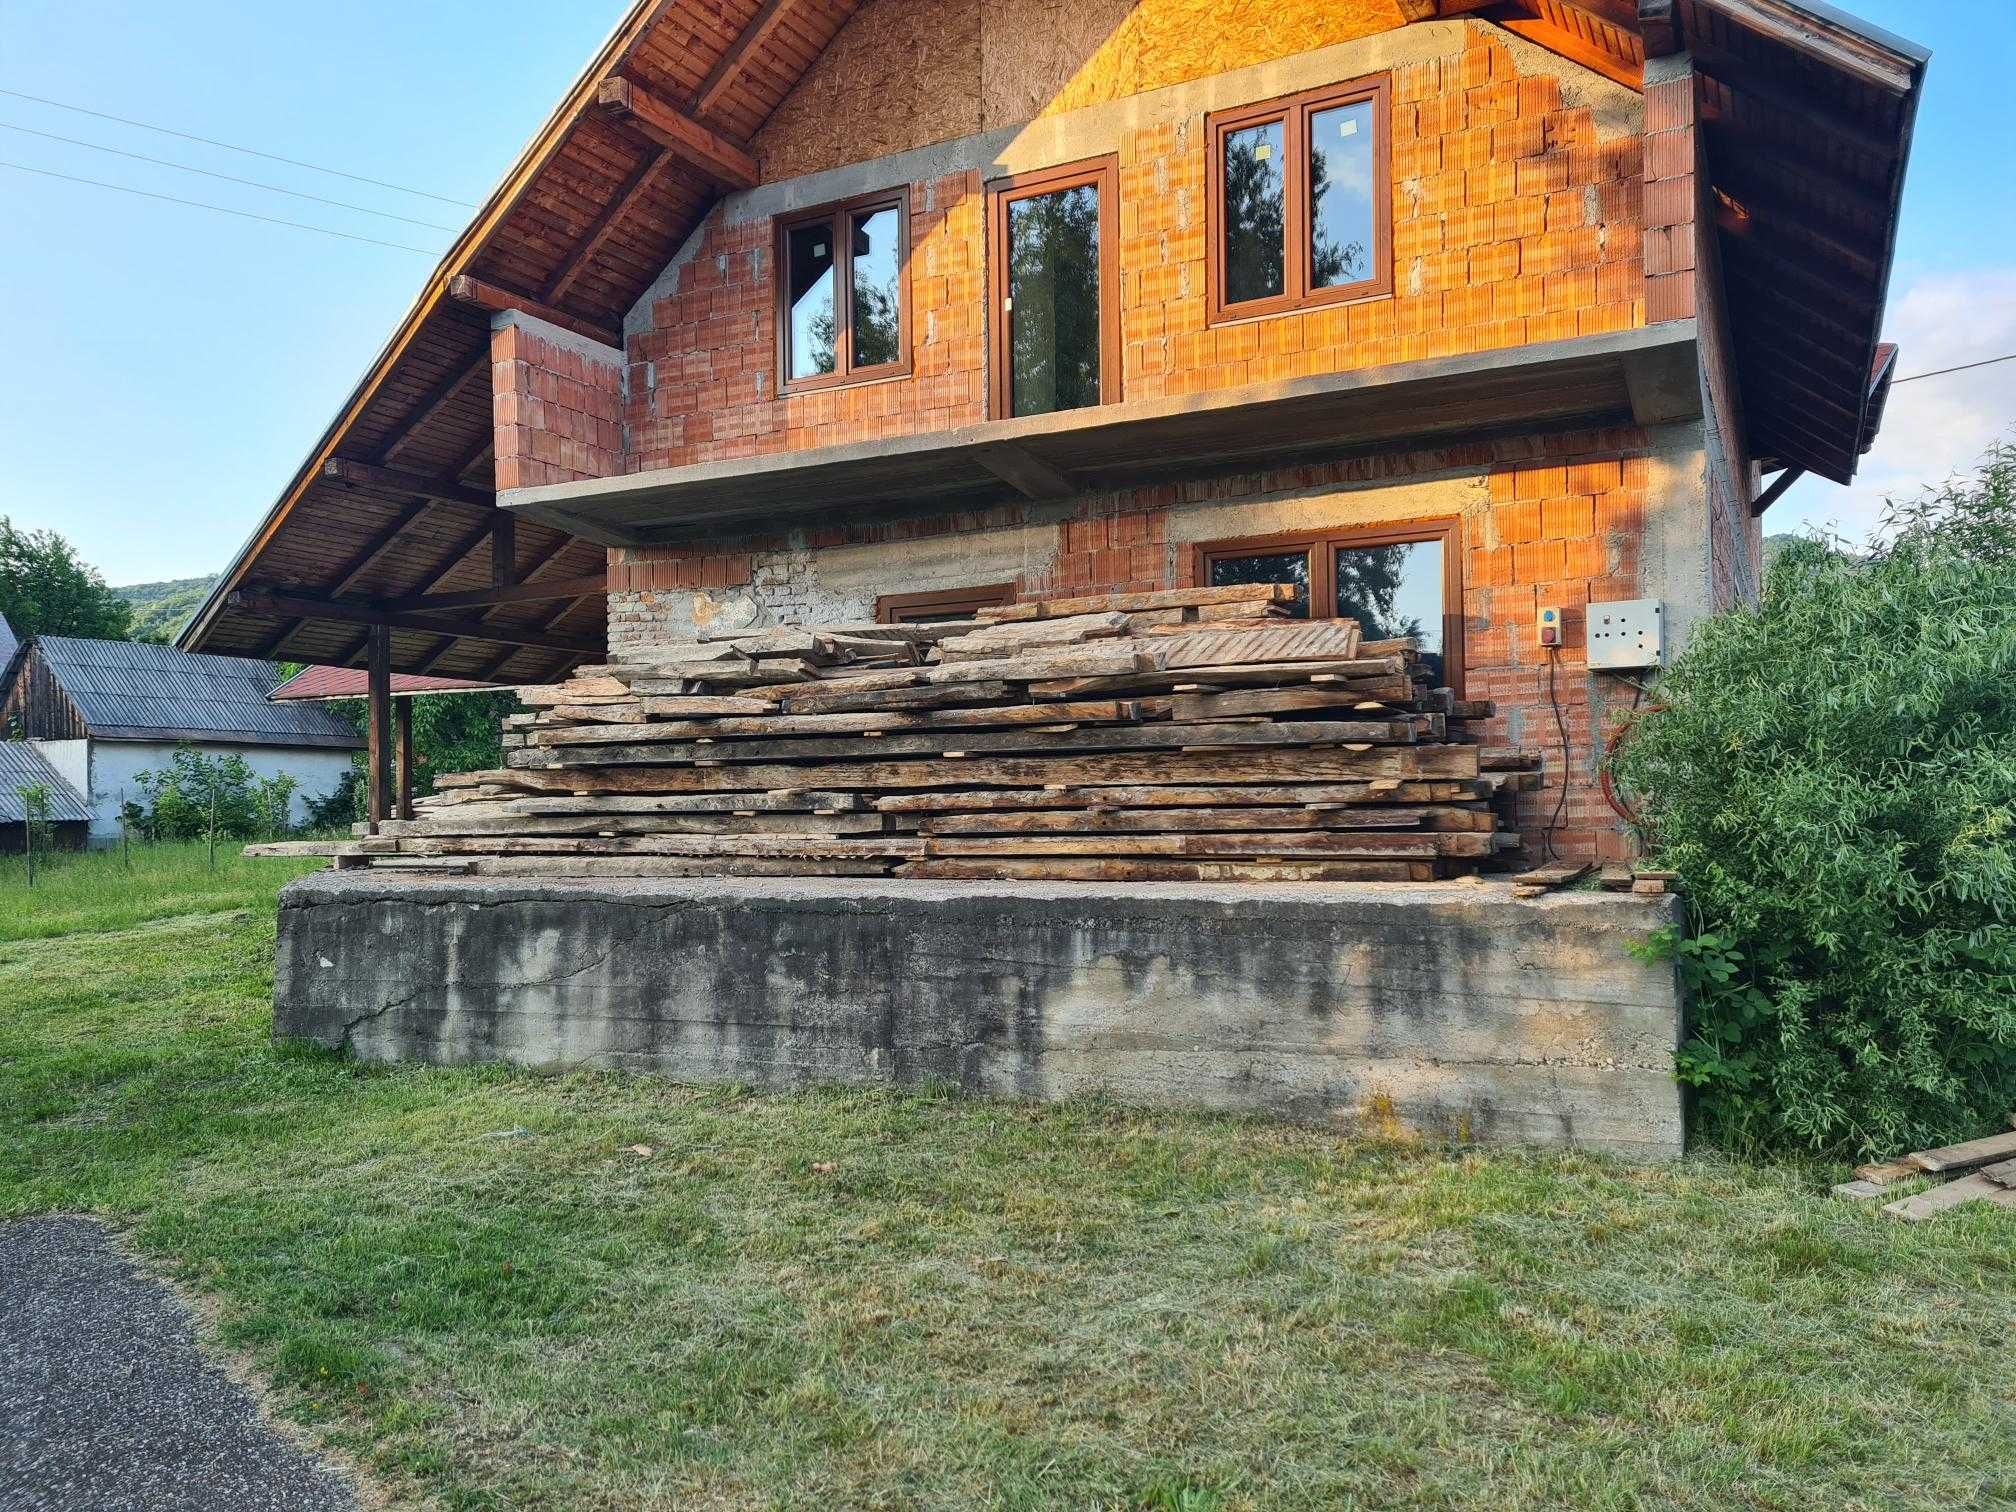 De vanzare casa din lemn de stejar pentru relocare